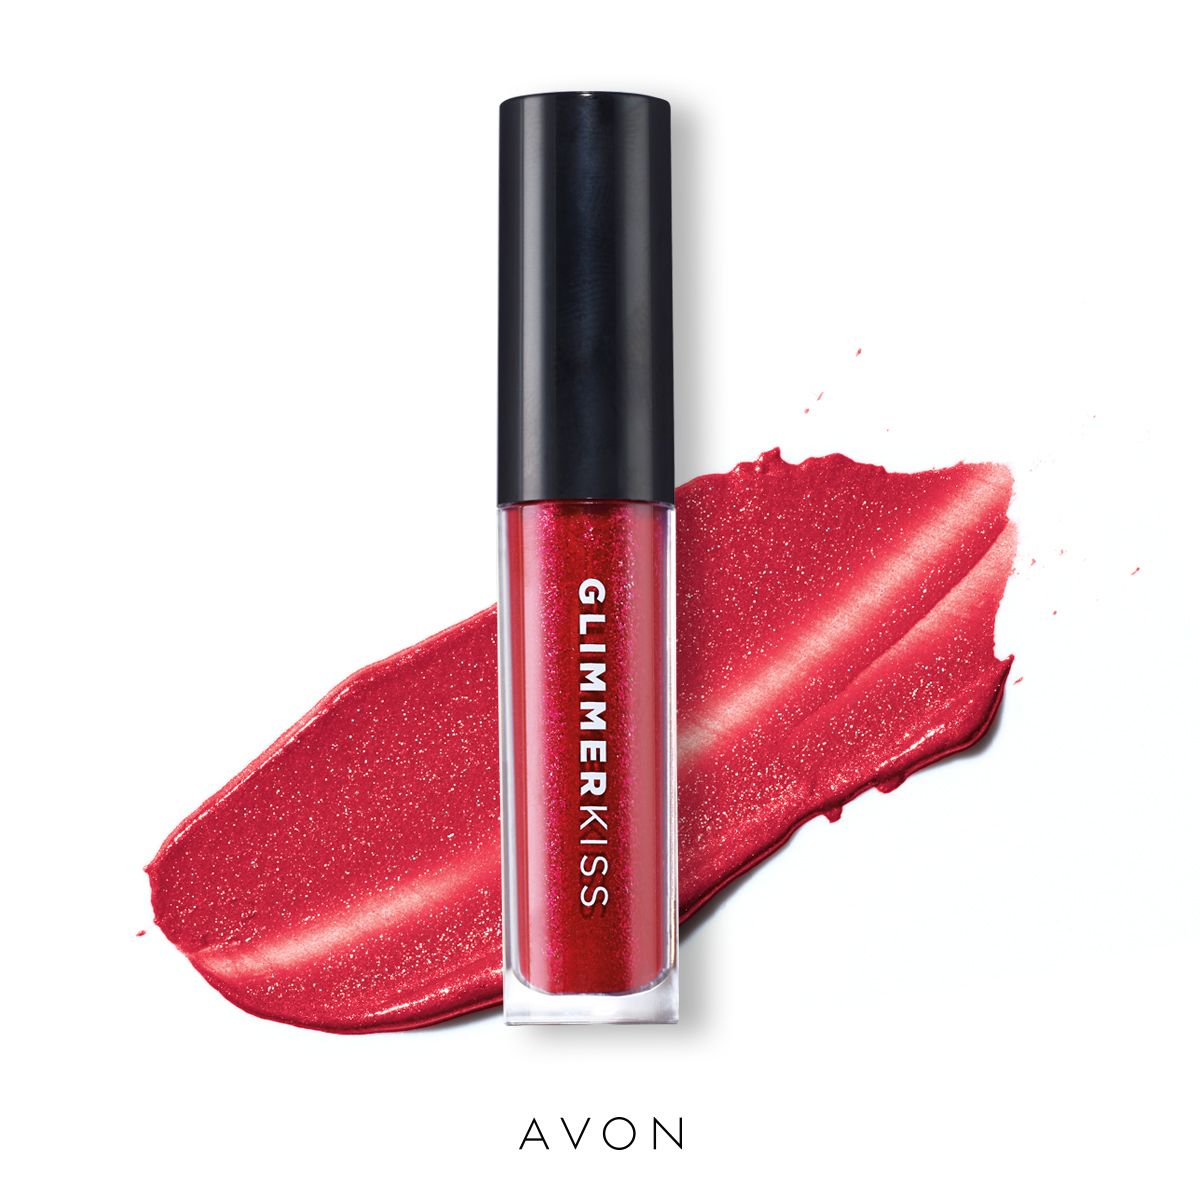 Avon Glimmerkiss liquid lipstick – 4 gorgeous shades!